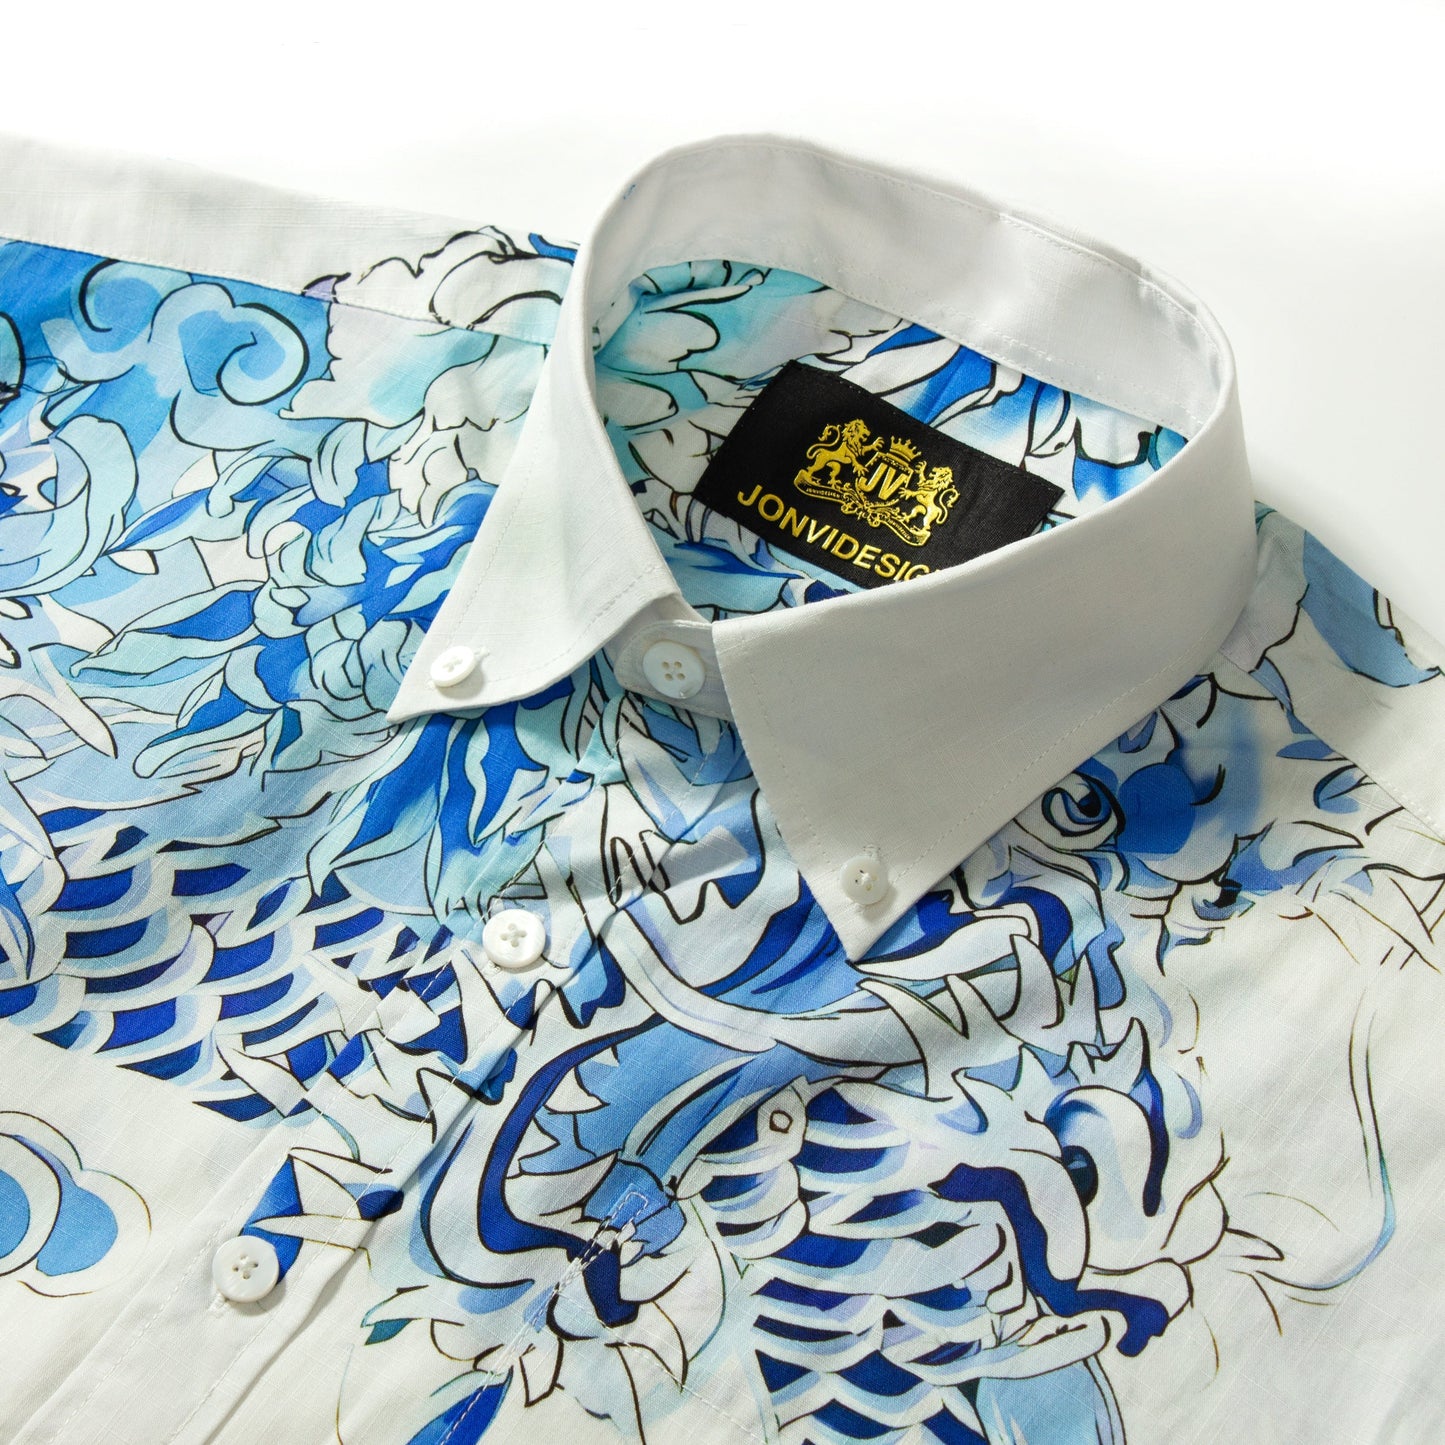 Dragon Print Short Sleeve Button-down Shirt for Men Jonvidesign